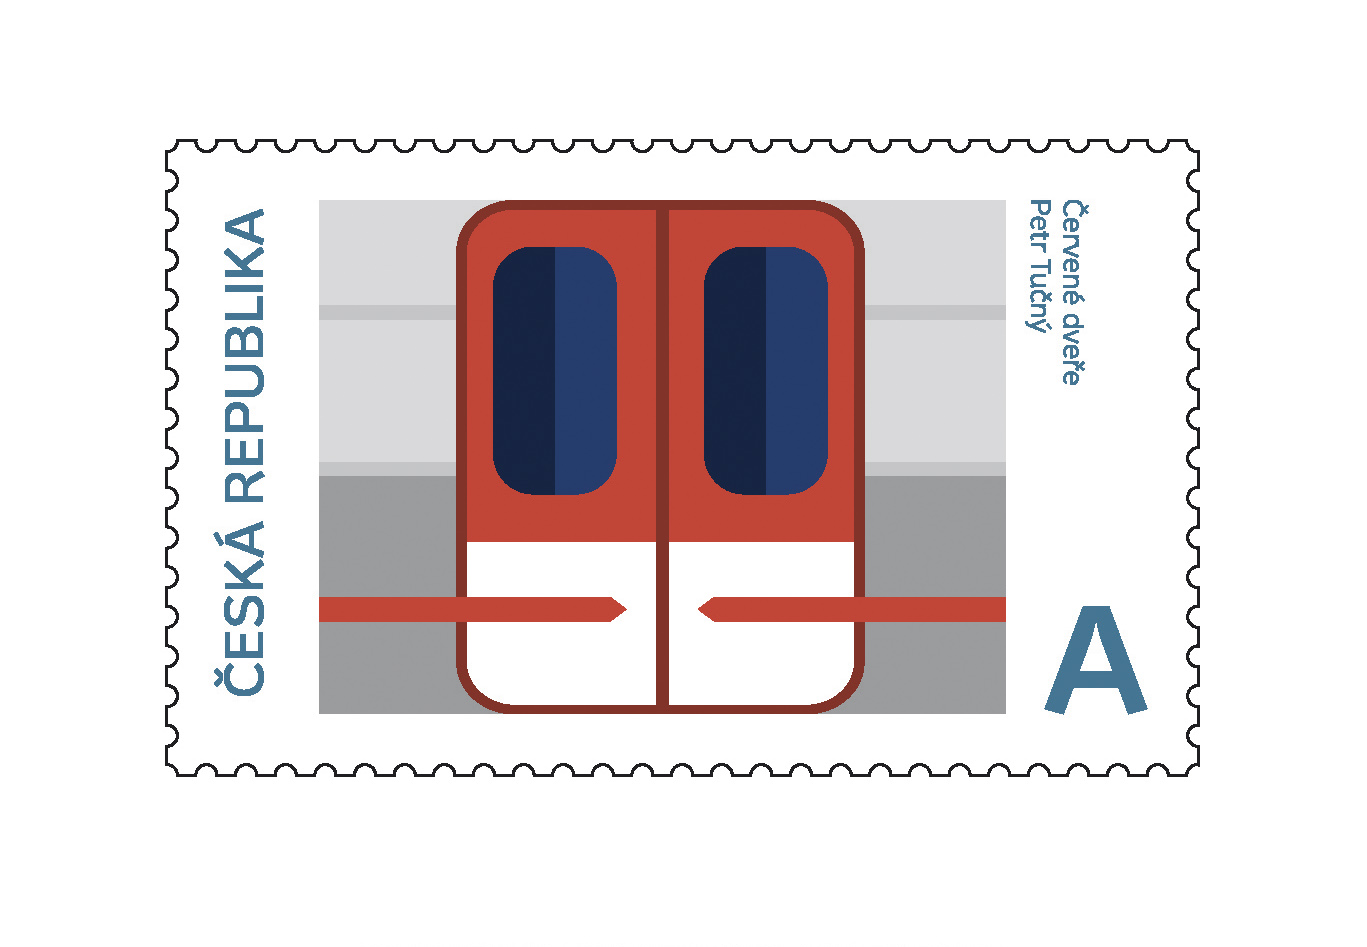 Série poštovních známek, FDC, razítko, přítisk<br> Národní kulturní identita<br> klauzurní práce | 1. ročník<br> G1A 01 2020/2021